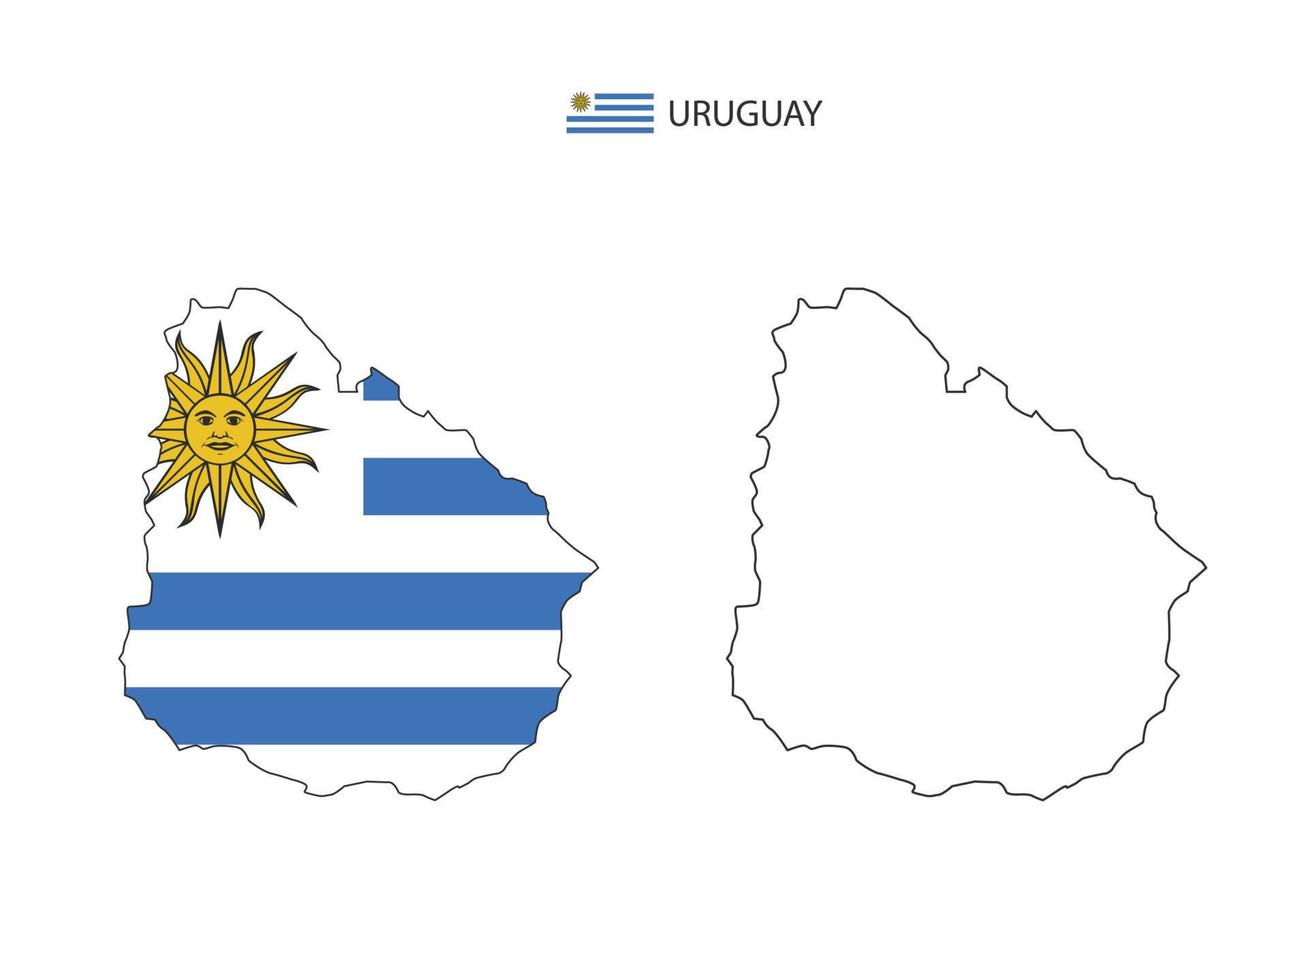 uruguay-karte stadtvektor geteilt durch umriss-einfachheitsstil. haben 2 Versionen, eine schwarze Version mit dünner Linie und eine Version in der Farbe der Landesflagge. beide Karten waren auf dem weißen Hintergrund. vektor